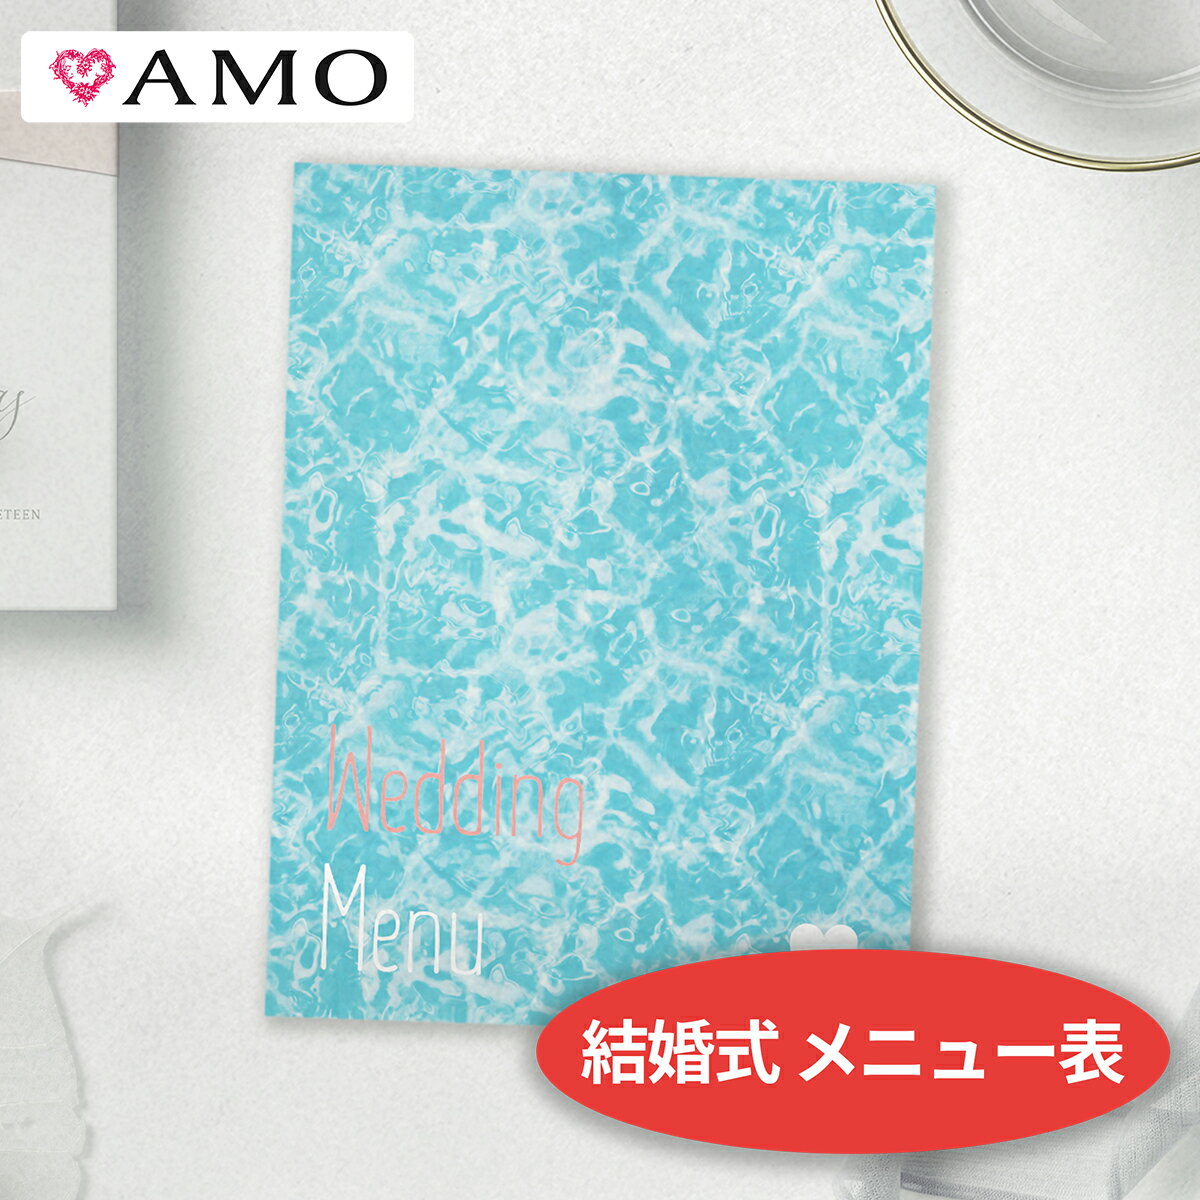 AMO 結婚式 メニュー表 手作りキット ウォータープール インクジェット対応 【30部までメール便可】